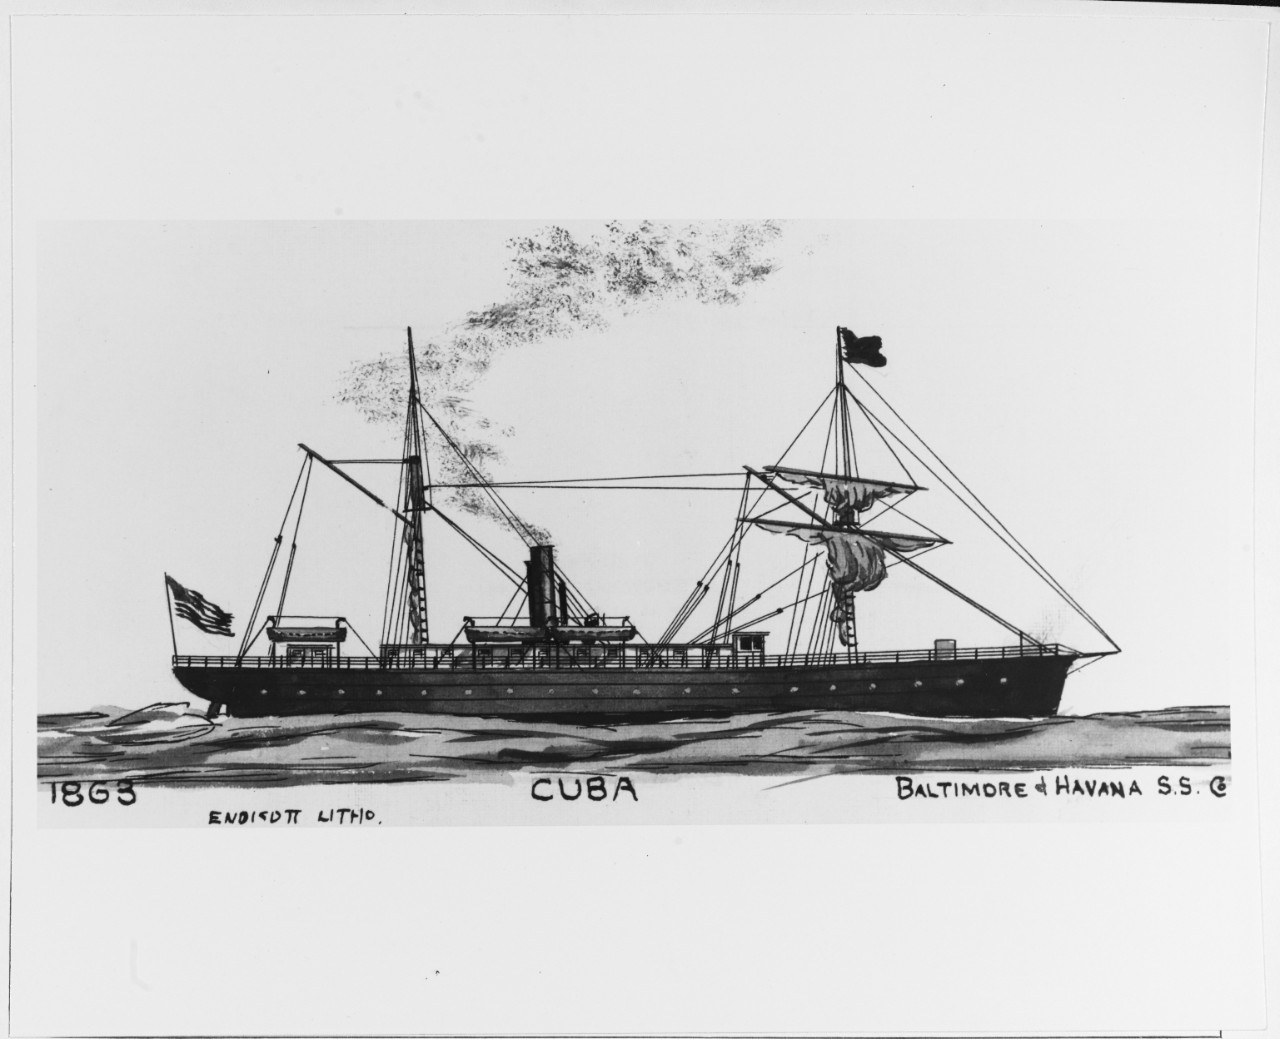 CUBA (merchant and naval steamer, 1863-1892)